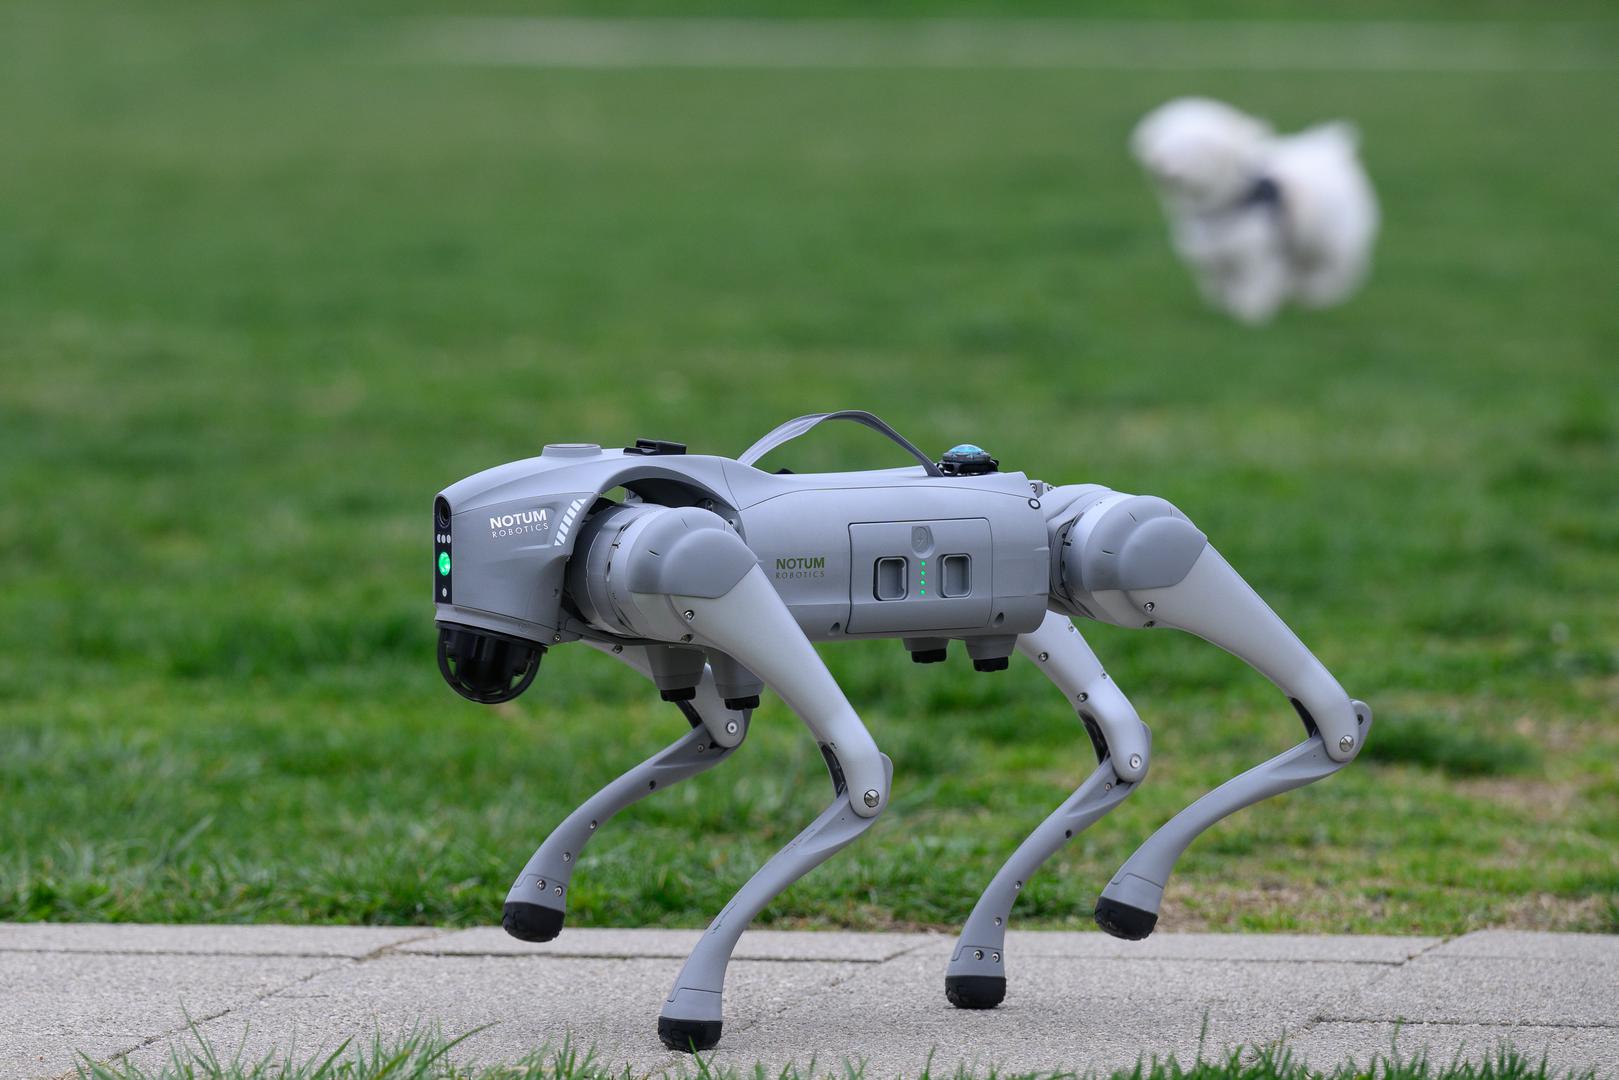 07.03.2024., Velika Gorica -  Milan Rajcevic, vlasnik i direktor tvrtke Notum Robotics sa suradnikom Ivanom Batinicem prosetao je Parkom dr. Franje Tudjmana u velikoj Gorici u drustvu robota psa. Za robota su podjednako bili zainteresirani prolaznici i njihovi ljubimci psi. Robot pas je komercijalni proizvod koji se radi po narudjbi, a ono sto je kod njega interesantno i unikatno su softverska rijesenja. Poanta je da ta platforma bude autonomna, bez ljudske intervencije i sa minimalnim odrzavanjem izvrsava zadatke prema svojem programu, da se snalazi u nepoznatim okolnostima, po nepoznatom terenu. Primjene su neogranicene, od sigurnosnih primjena, sluzbe spasavanja, nadzora te interakcije i edukacije. Puni se do 24 sata zbog tehnologije baterije i moze raditi do 3 sata, a trcati moze brzinom do 20 km/h. Trenutno nije vodootporan ali s vremenom moze postati i vodootporan i vatrootporan za siri spektar primjena.
 Photo: Davor Puklavec/PIXSELL